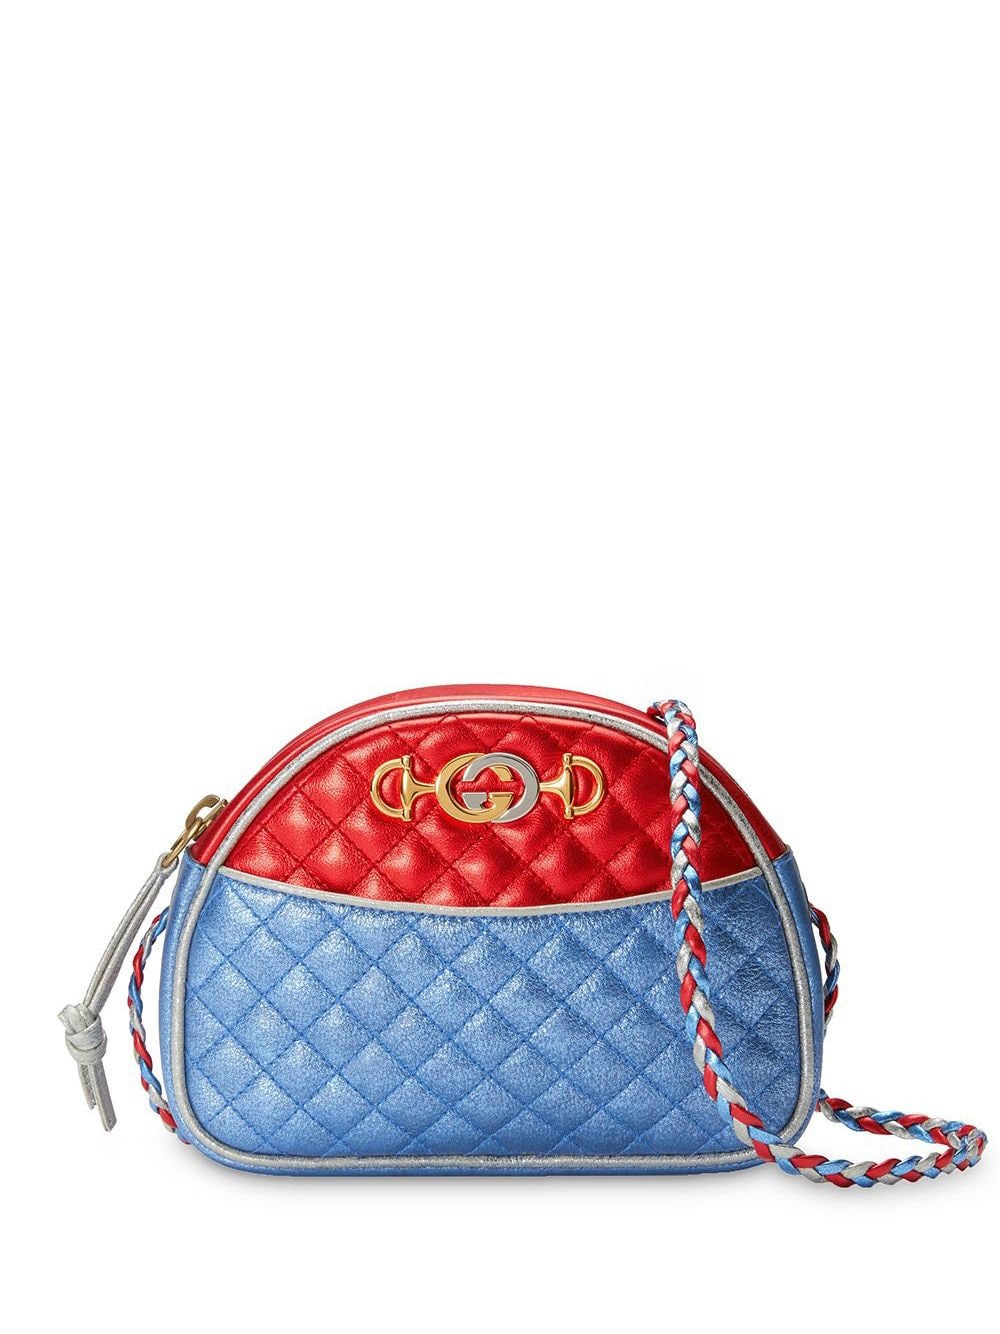 фото Gucci мини-сумка с отблеском